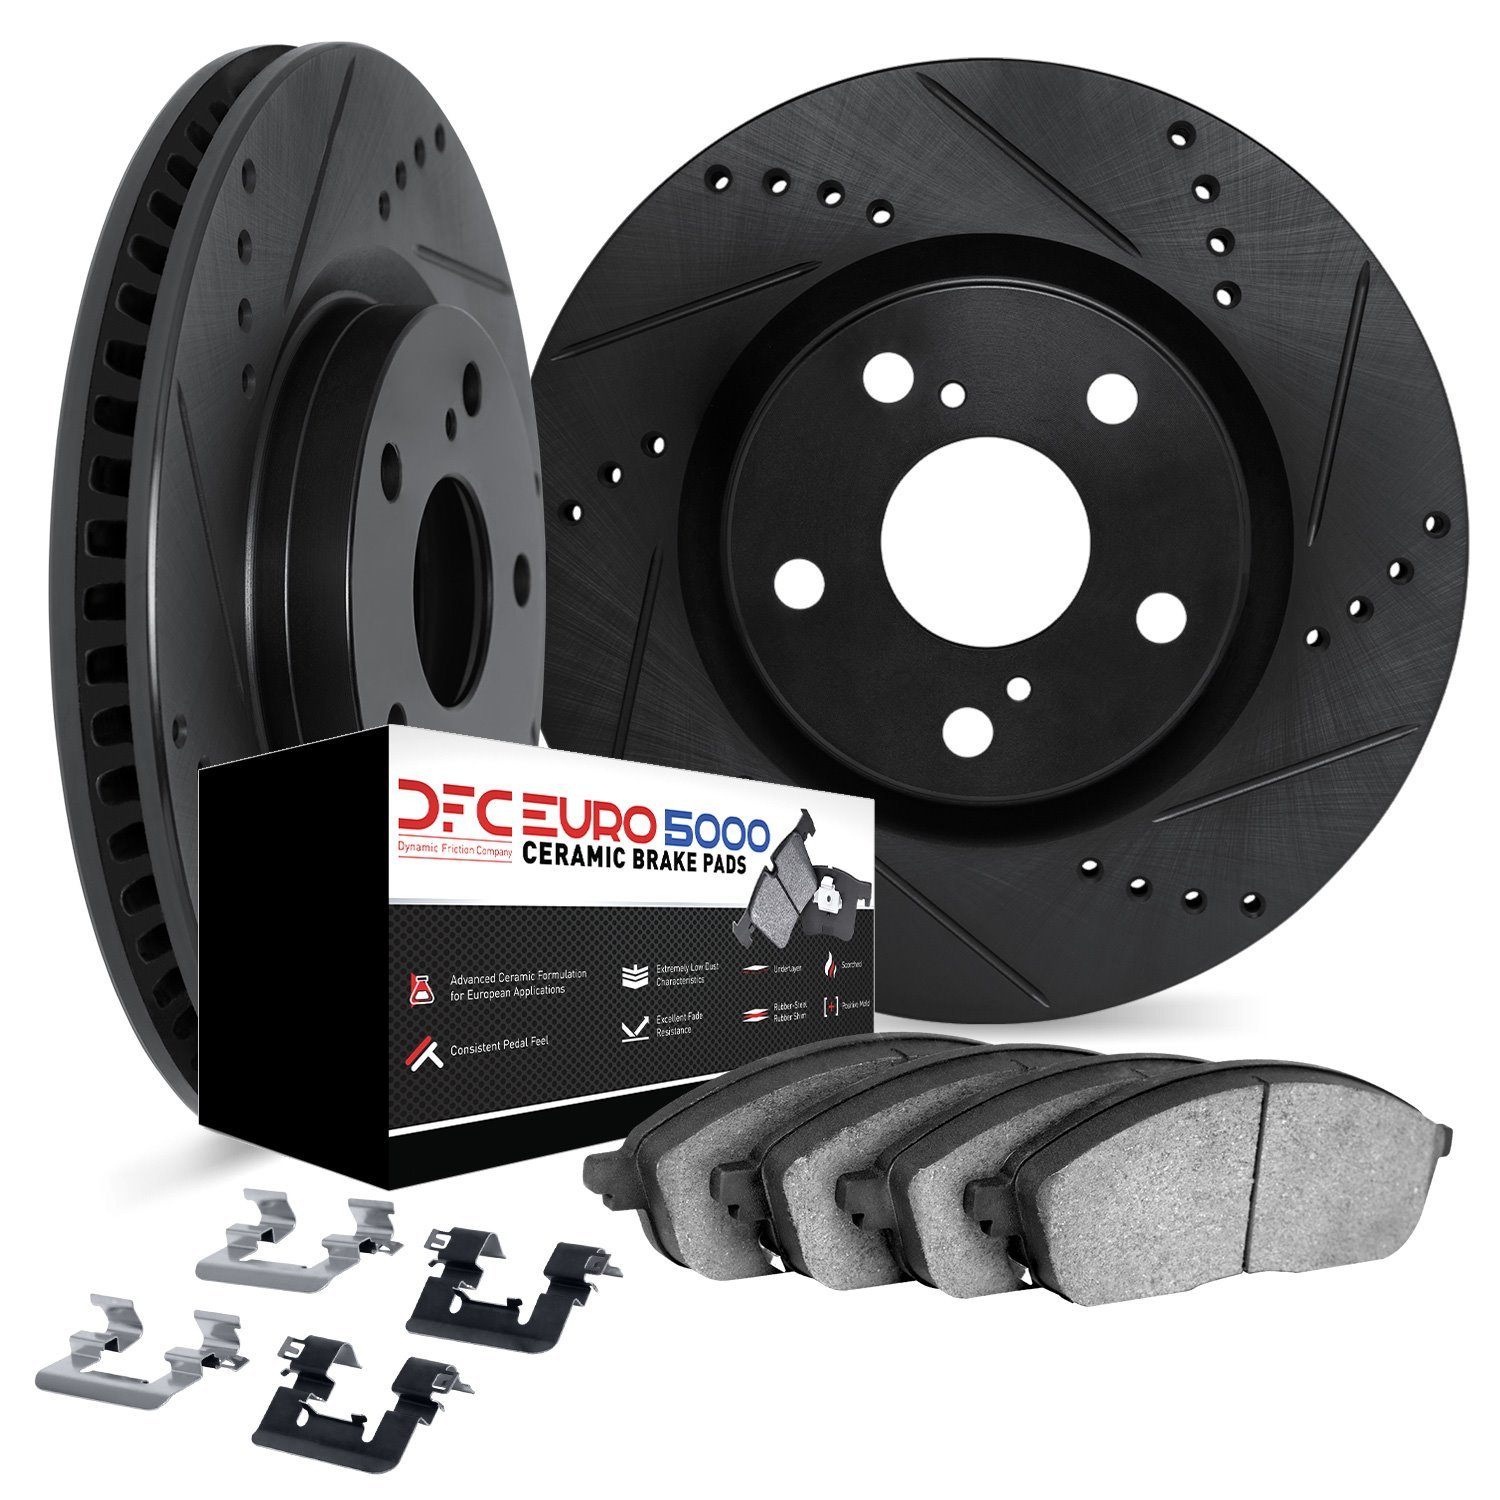 8612-31070 Drilled/Slotted Brake Rotors w/5000 Euro Ceramic Brake Pads Kit & Hardware [Black], 2006-2015 BMW, Position: Rear